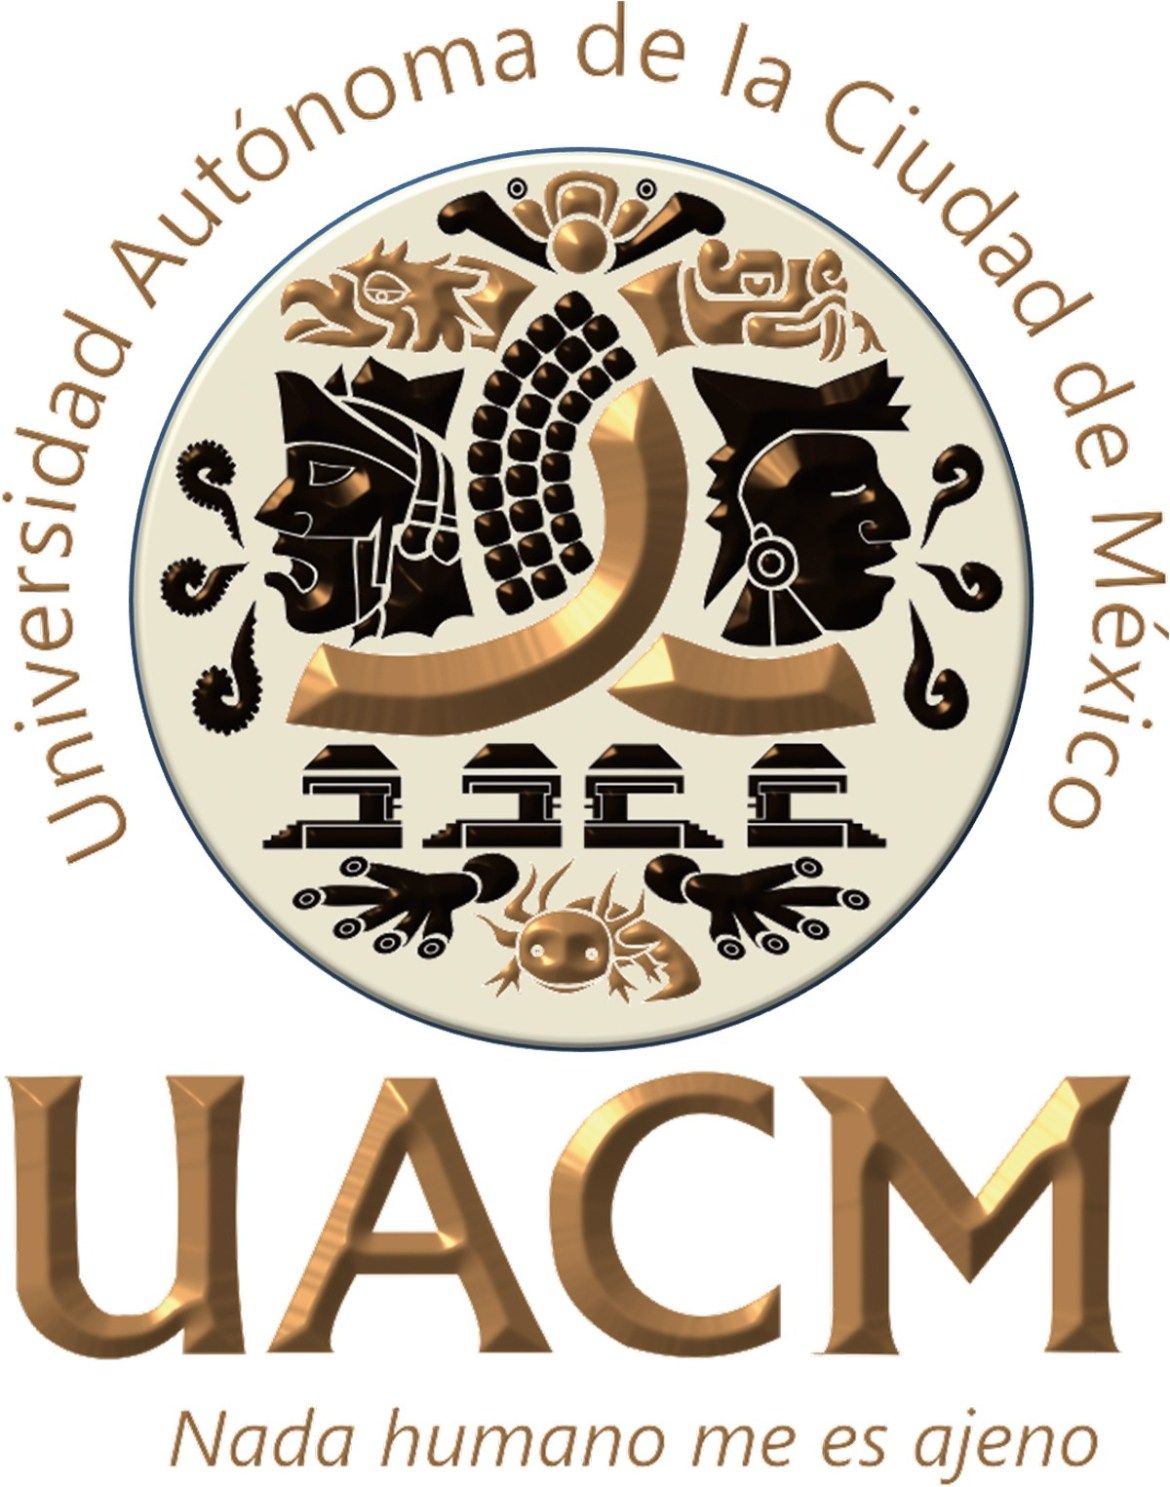 Universidad-Autónoma-de-la-Ciudad-de-México-UACM[1]